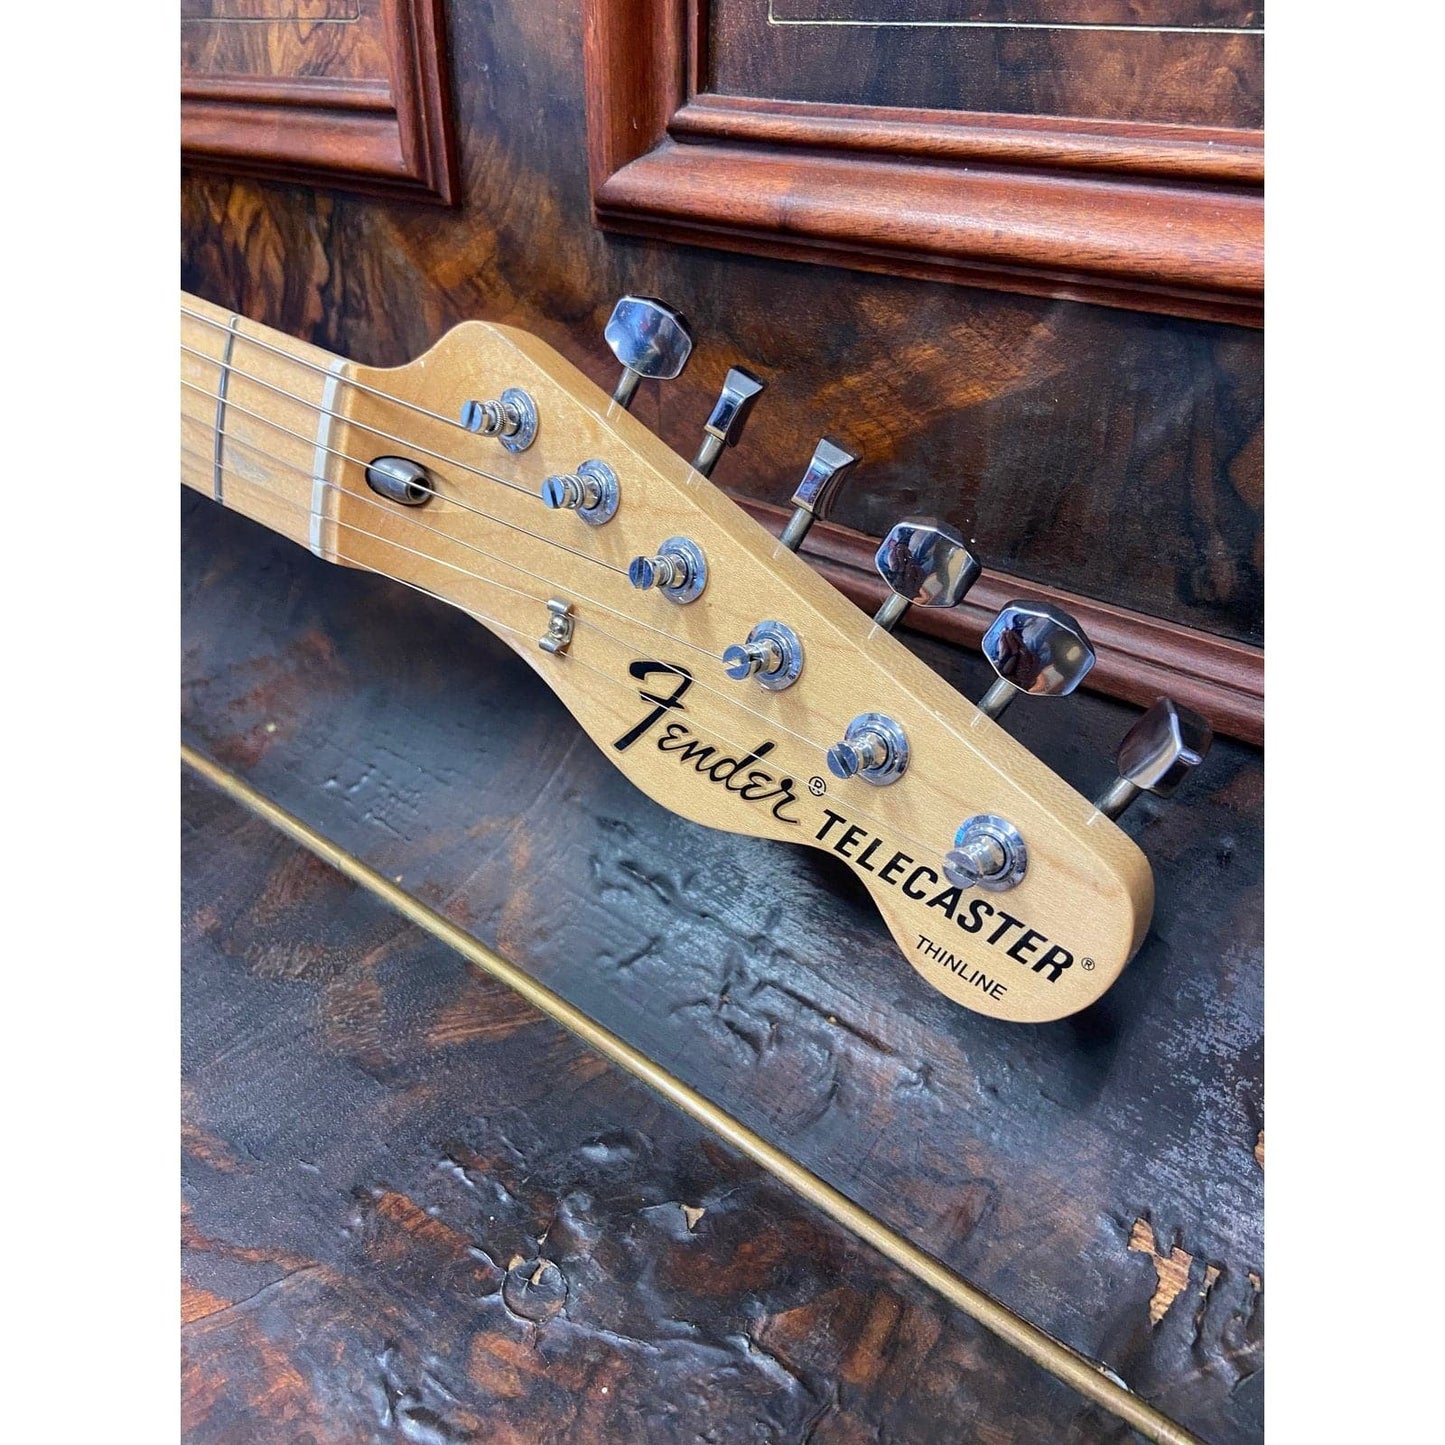 Fender Telecaster Thinline Classic Series ’72 Sunburst 2014